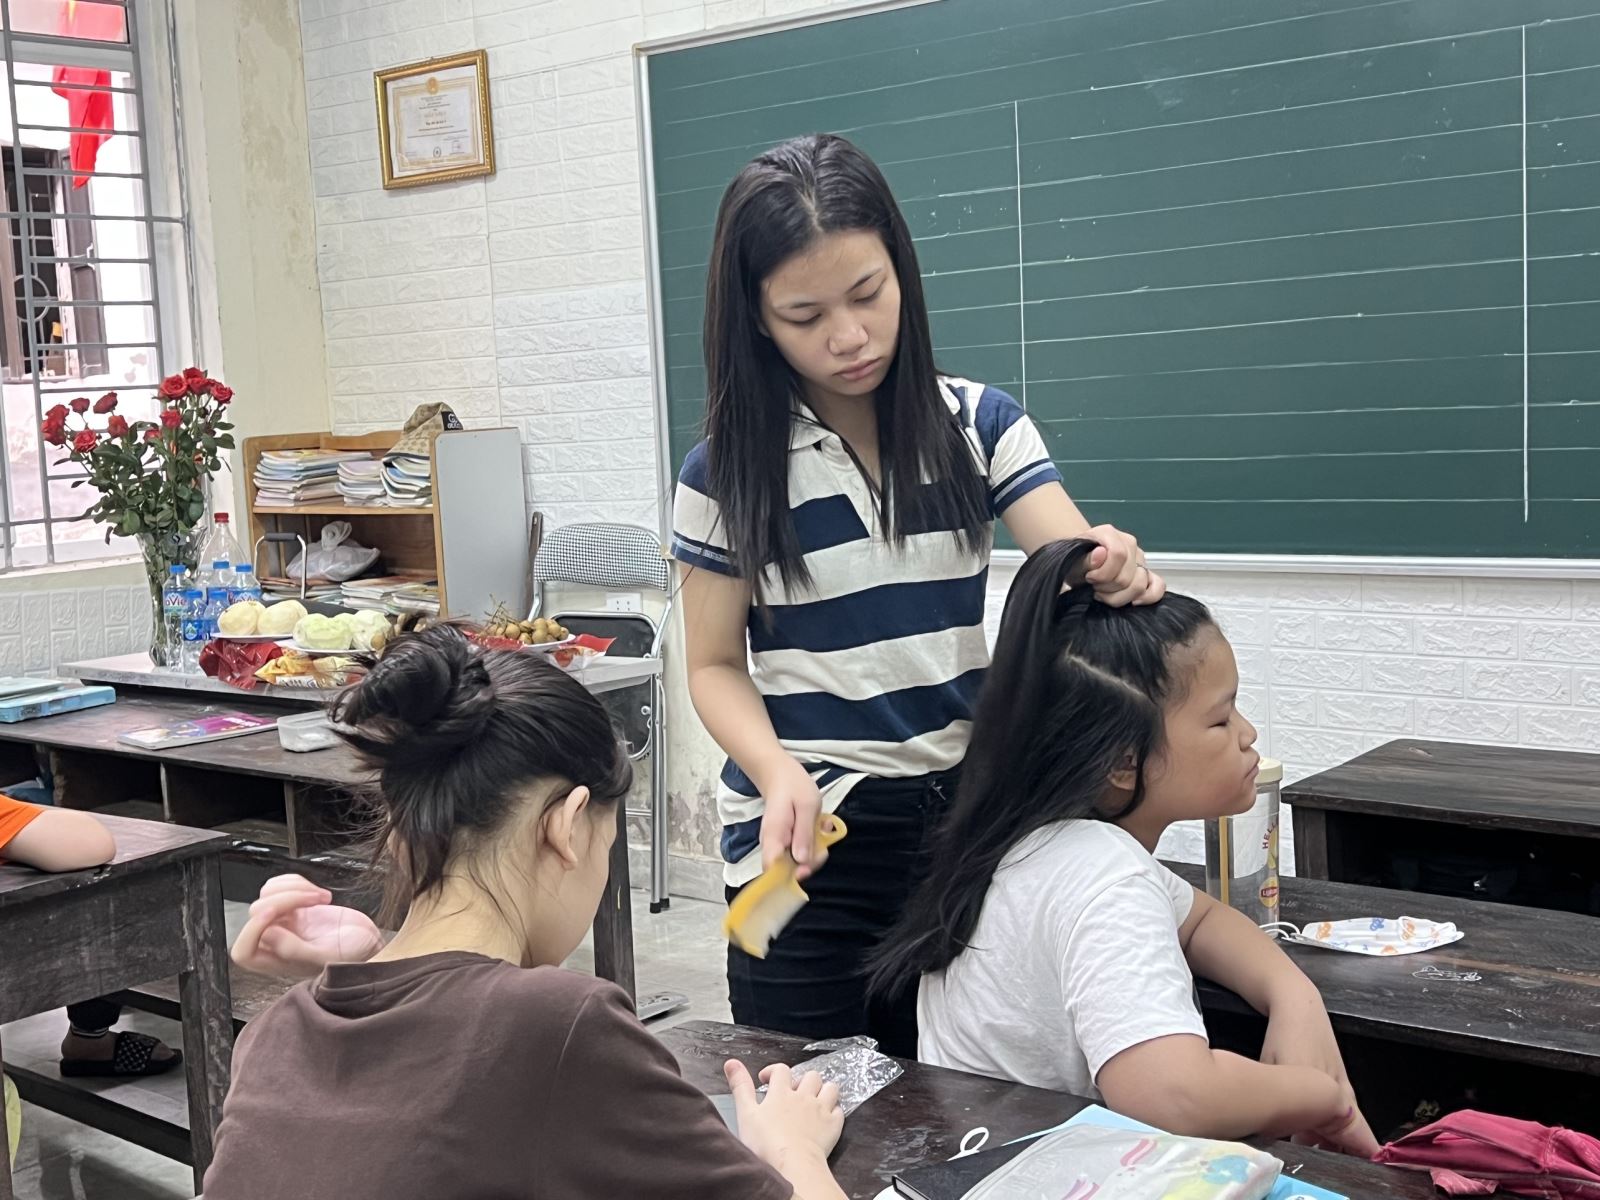 Phạm Thị Hoài, 20 tuổi đang học kiến thức lớp 5, làm lớp trưởng, giúp cô giáo quản lý lớp và chăm sóc cho các bạn nhỏ hơn.